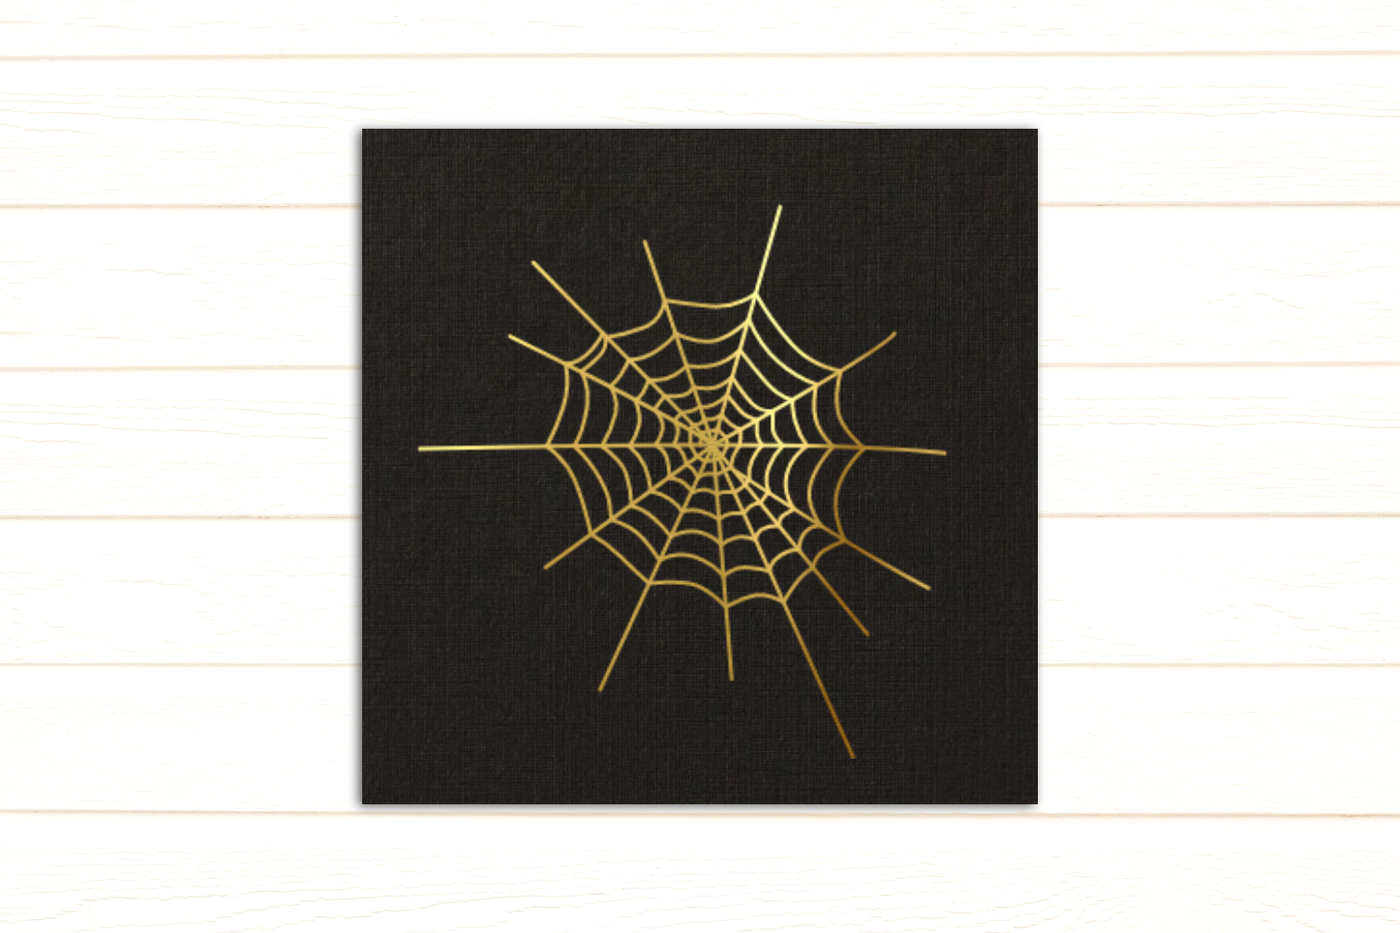 Spiderweb sketch single line design in gold foil